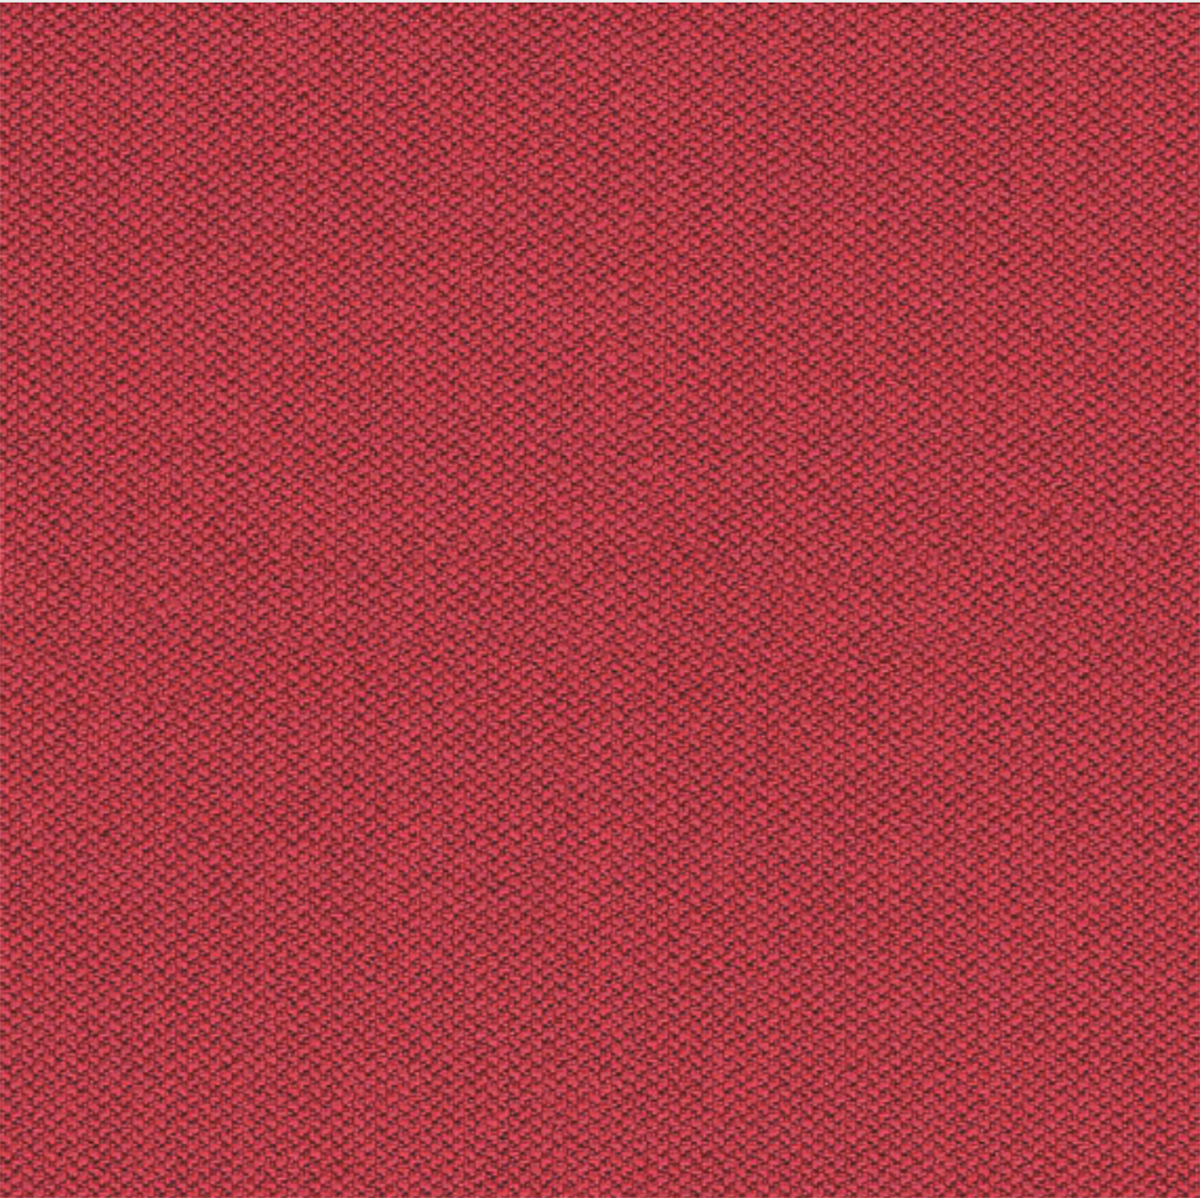 Camira Red Era Fabric [+€51.60]